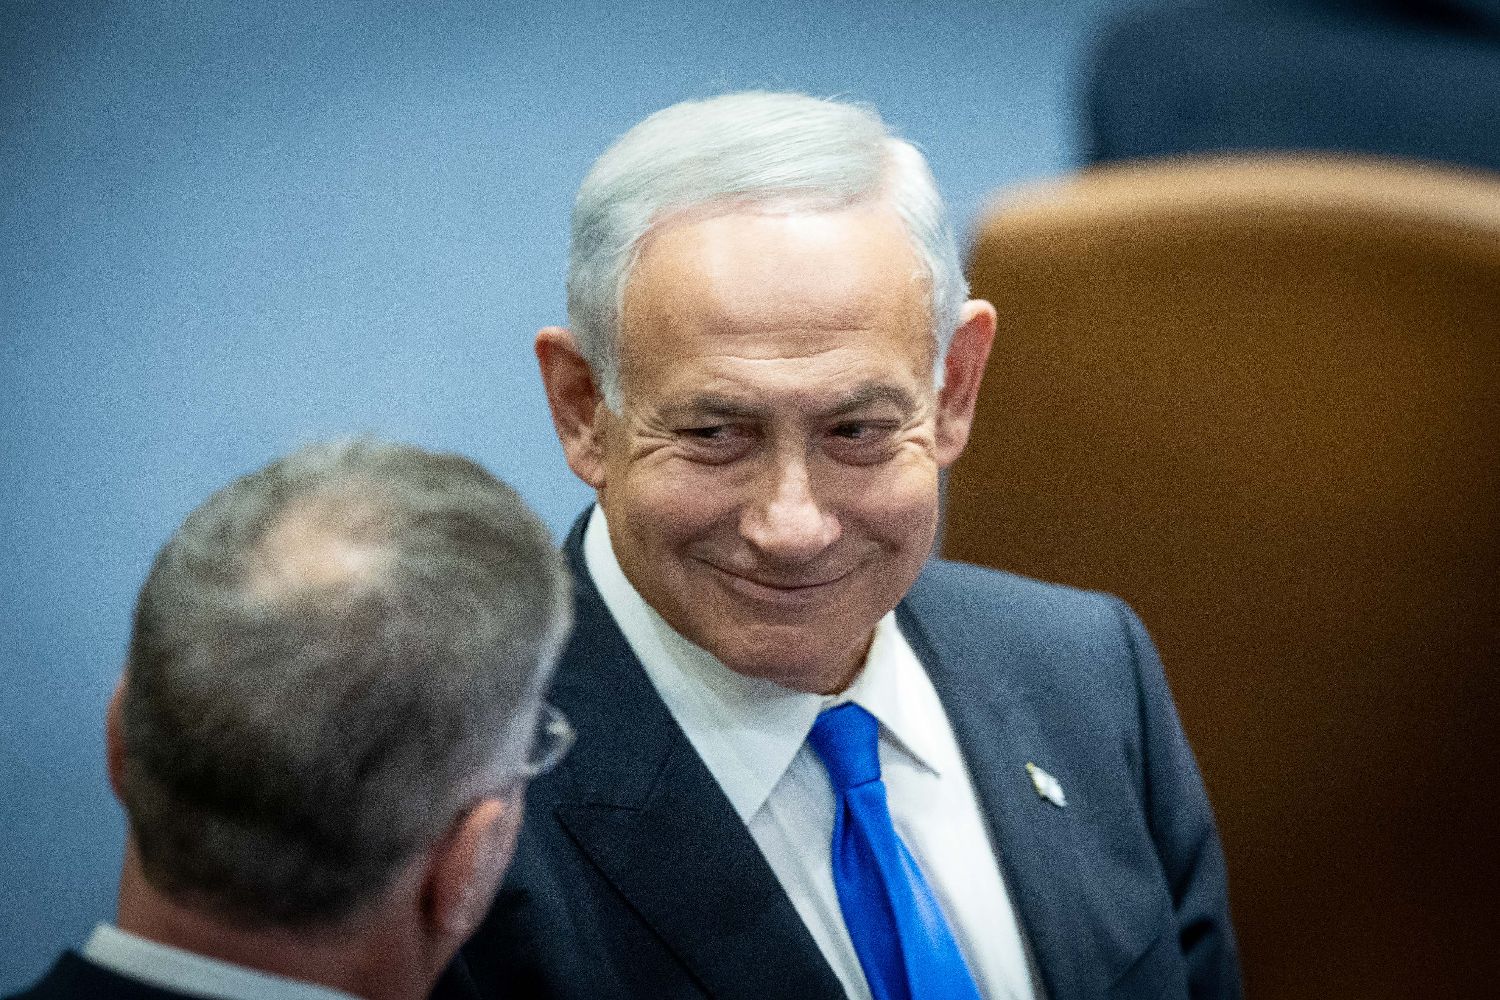 以色列总理内塔尼亚胡任命代理外交部长-搜狐大视野-搜狐新闻